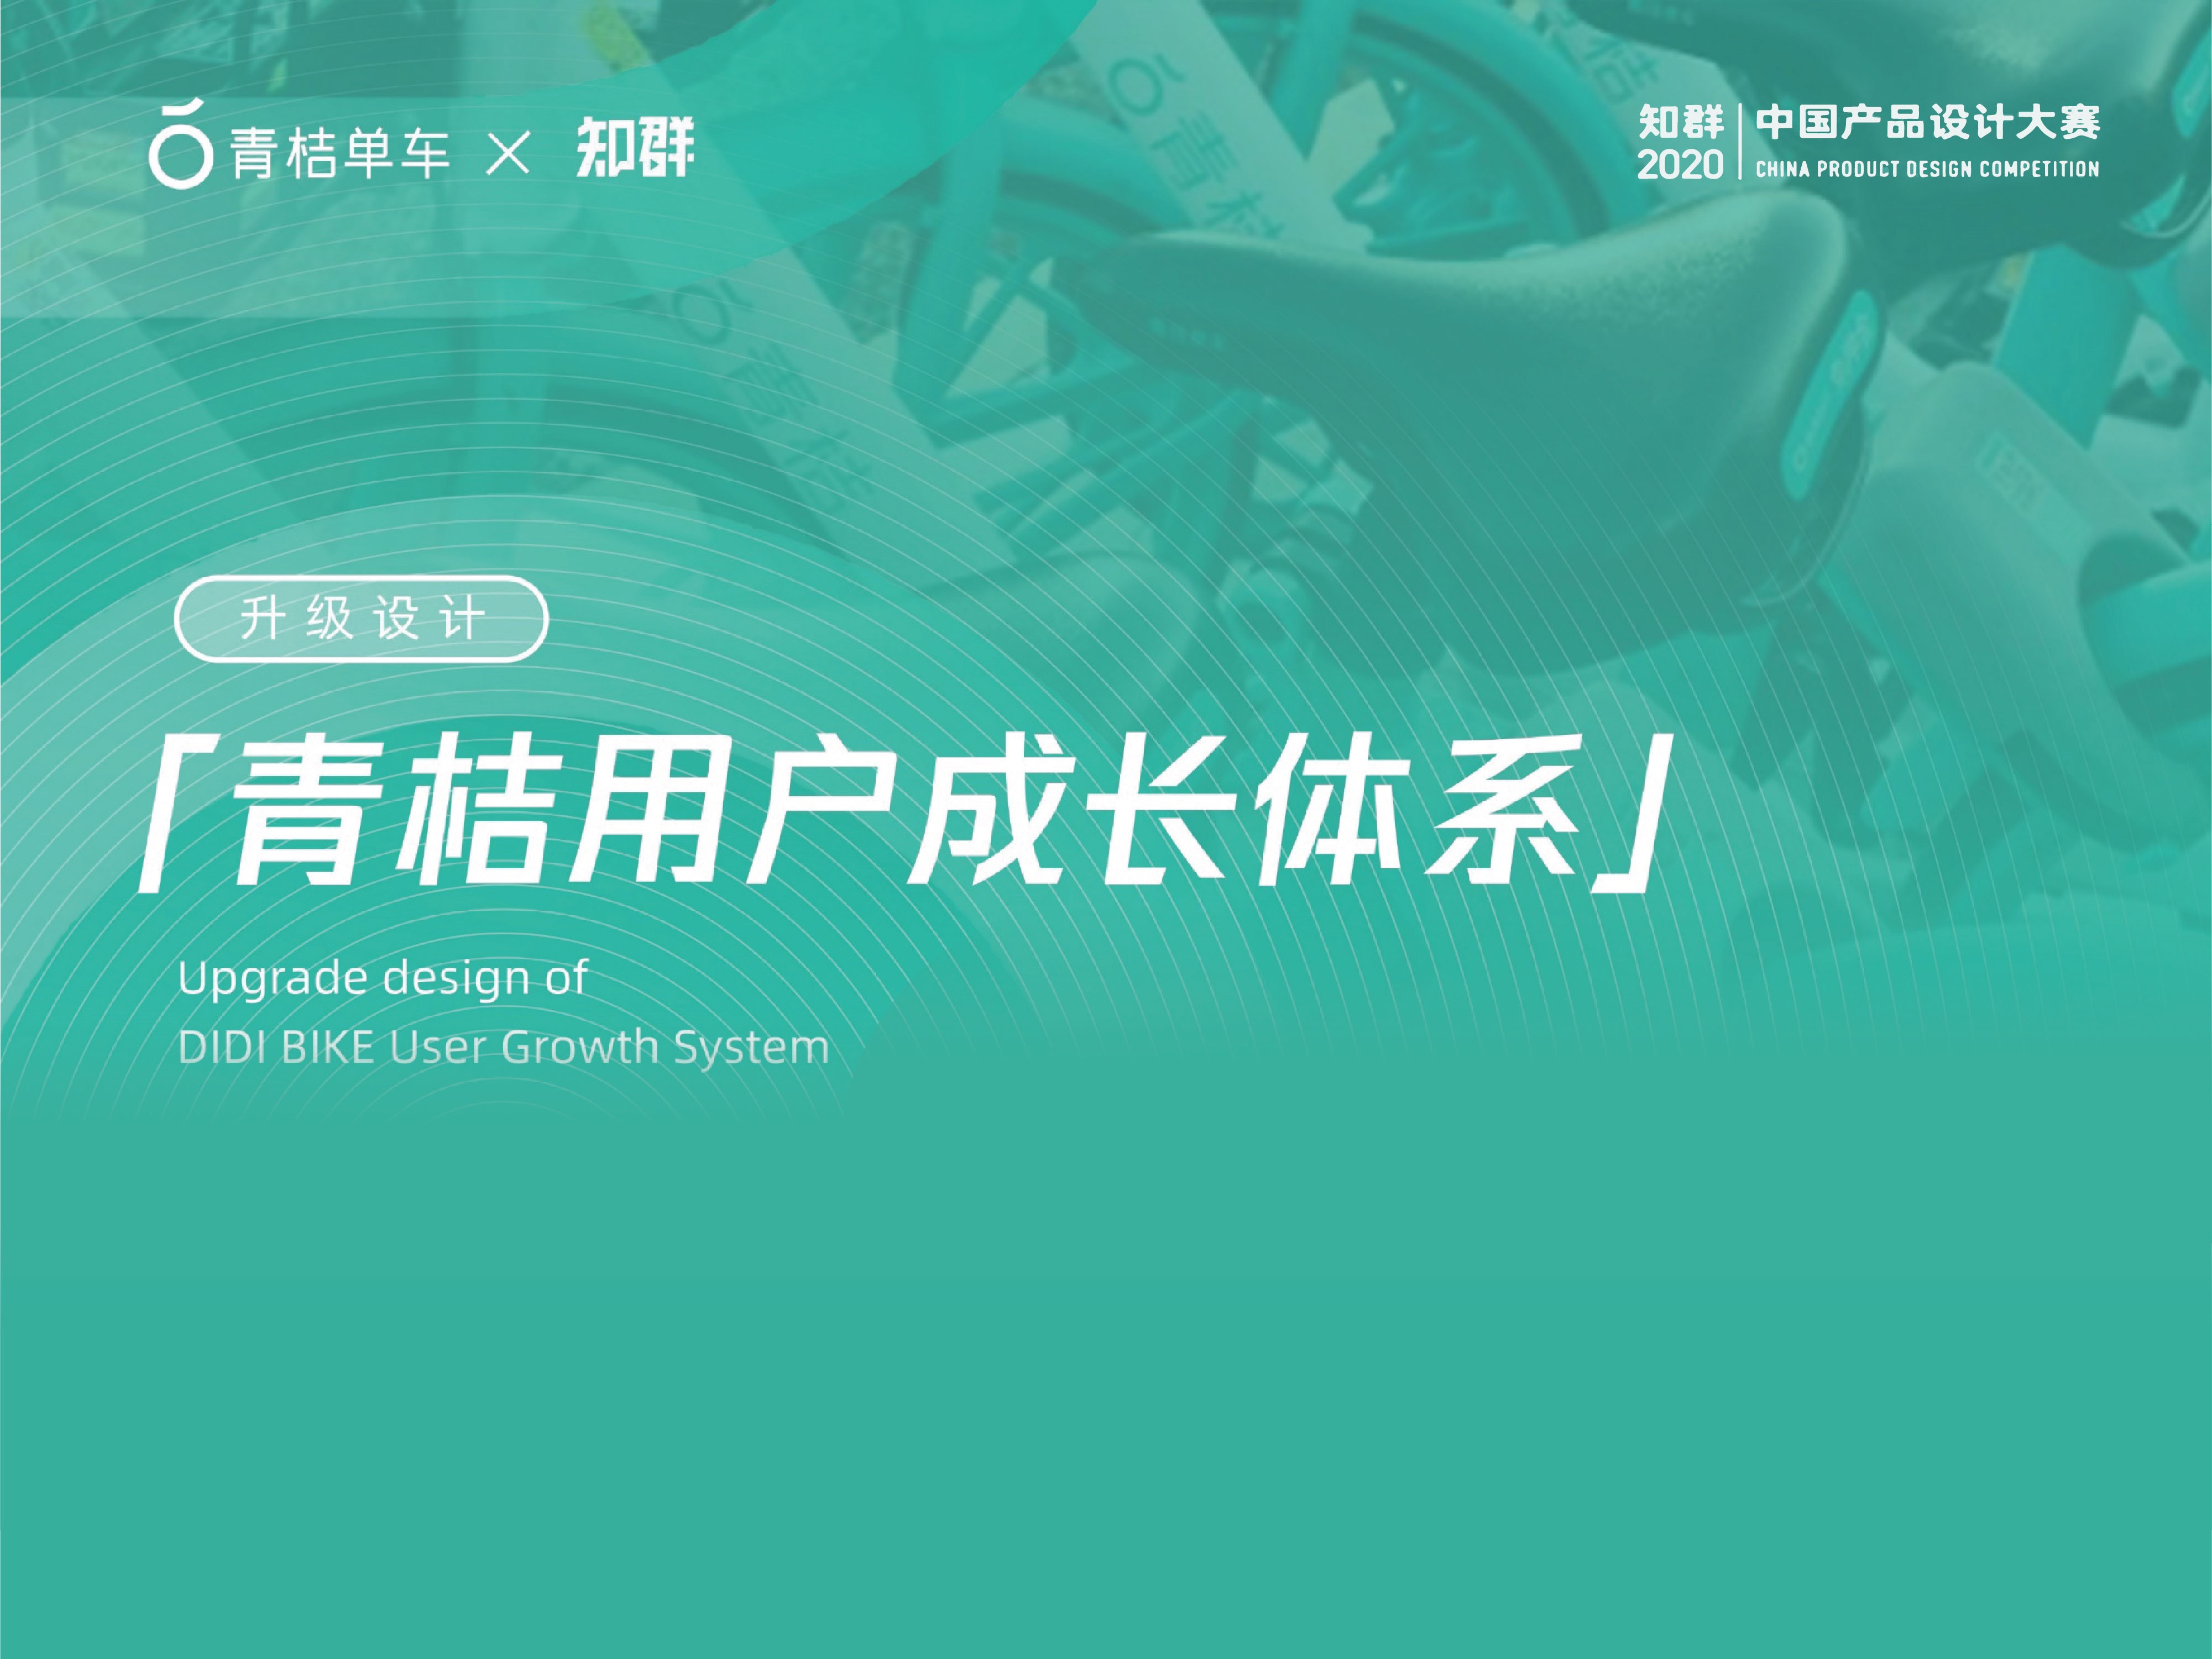 「知群X青桔 中国产品设计大赛」用户成长体系·最佳奖